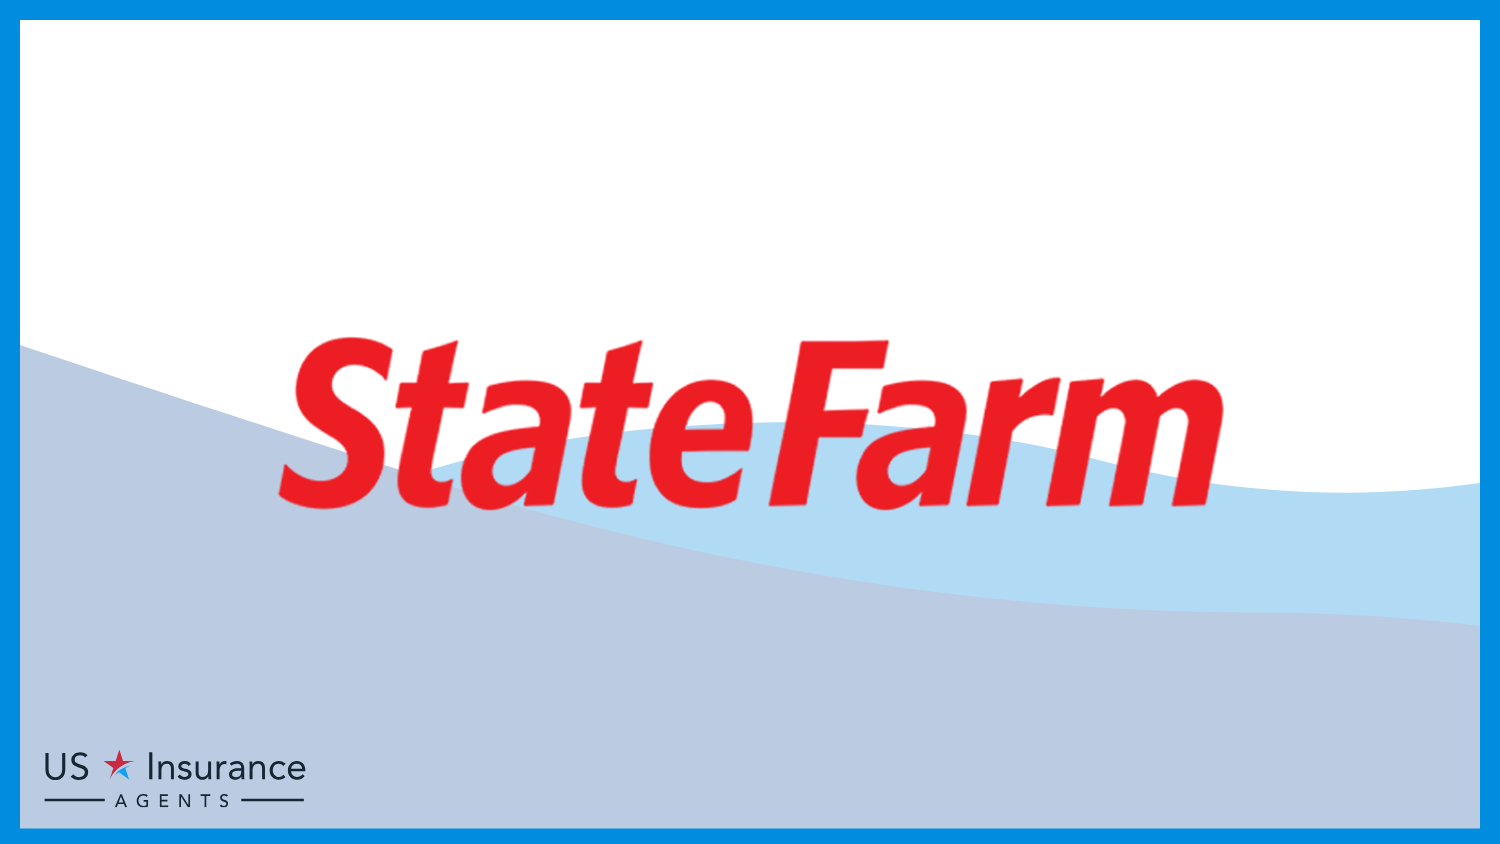 State Farm: Best Life Insurance for Veterans